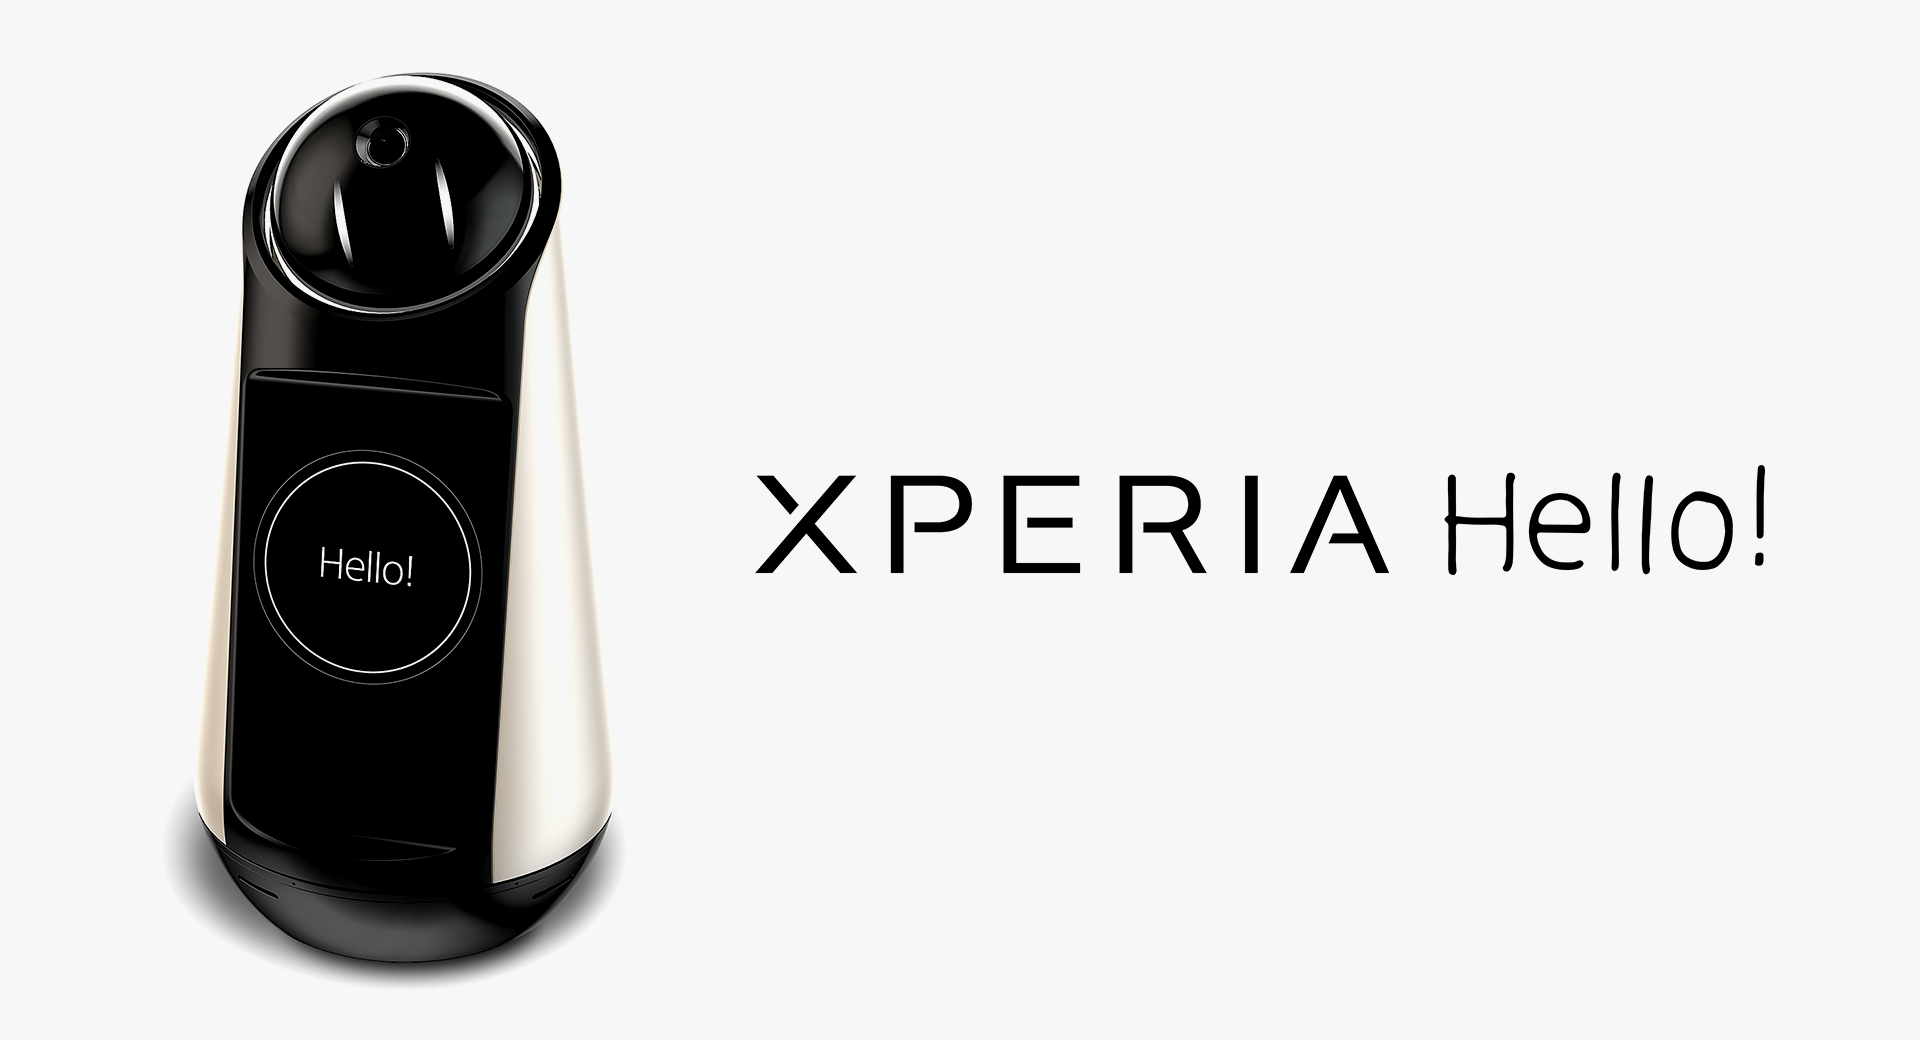 Xperia Hello!（エクスペリア ハロー）G1209 | スマートプロダクト